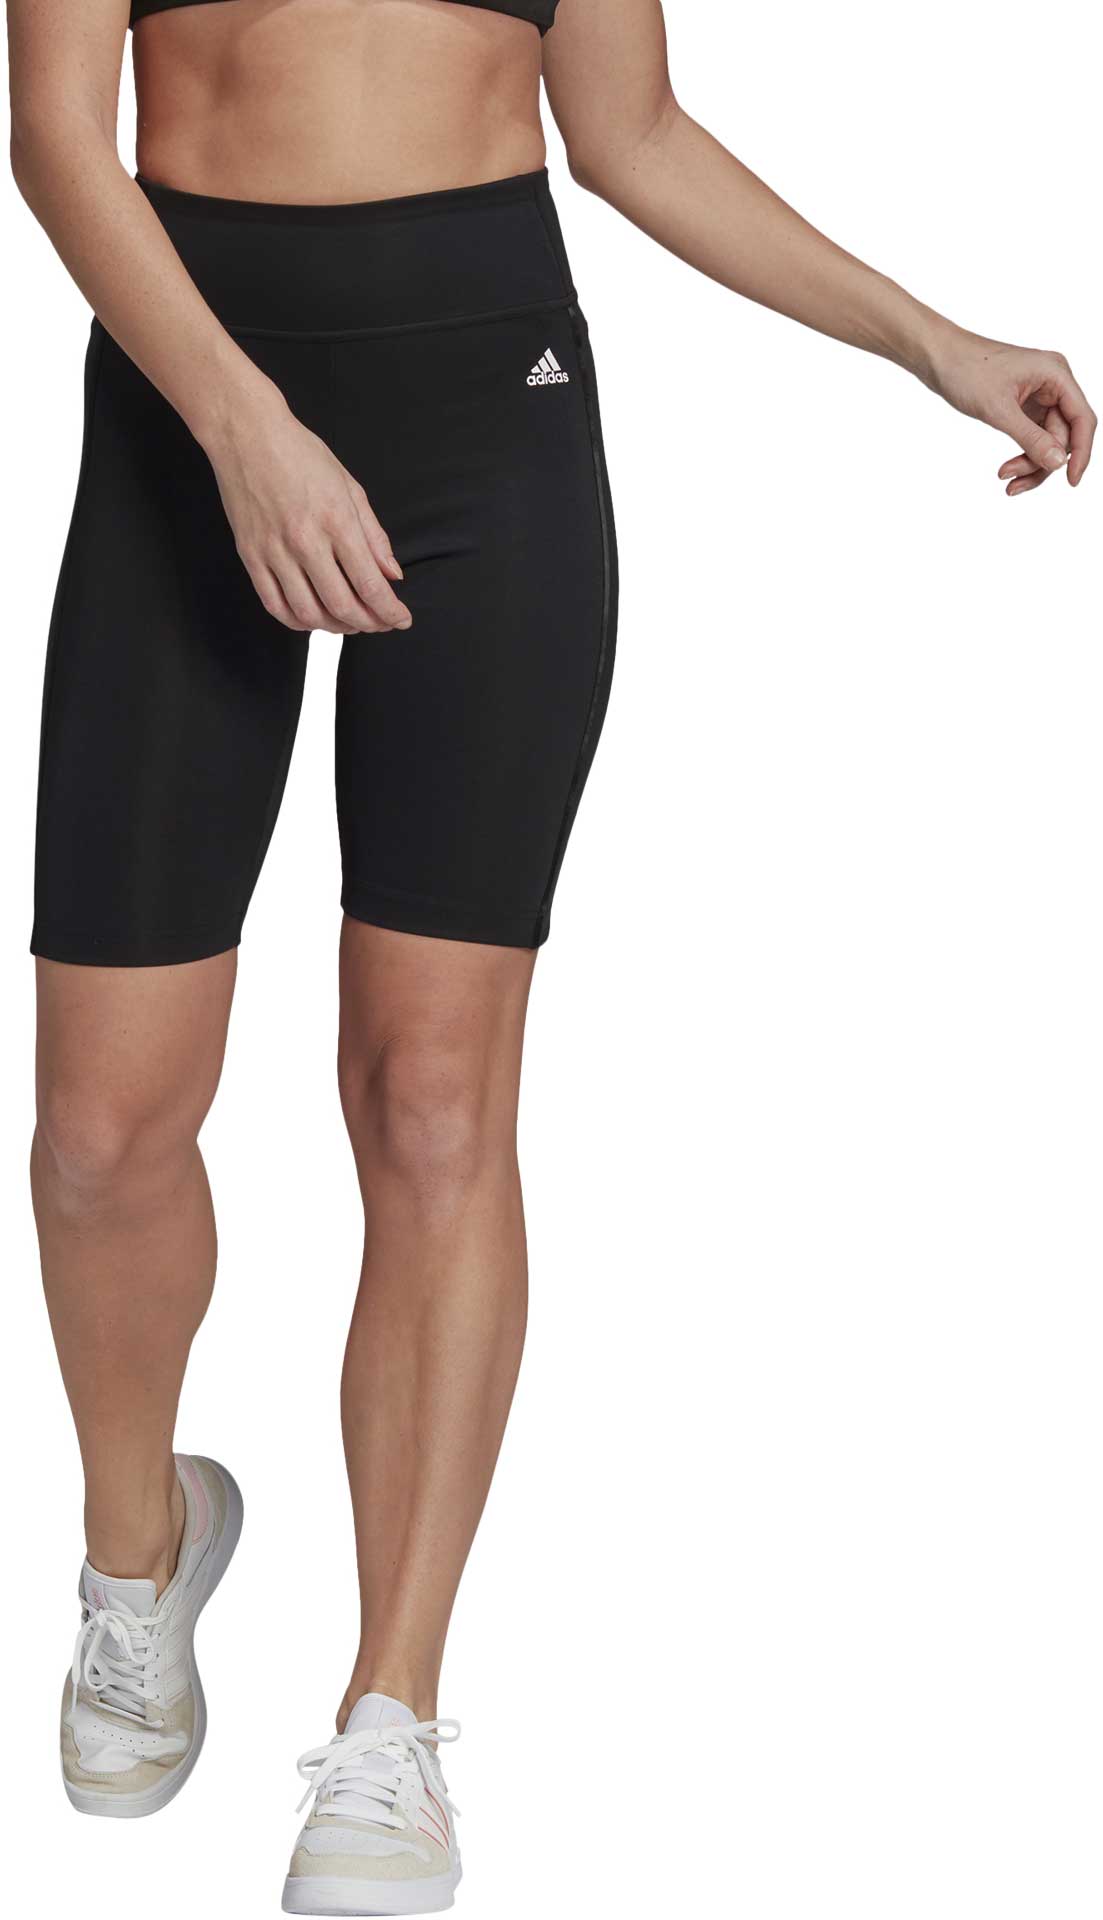 Women's shorts leggings